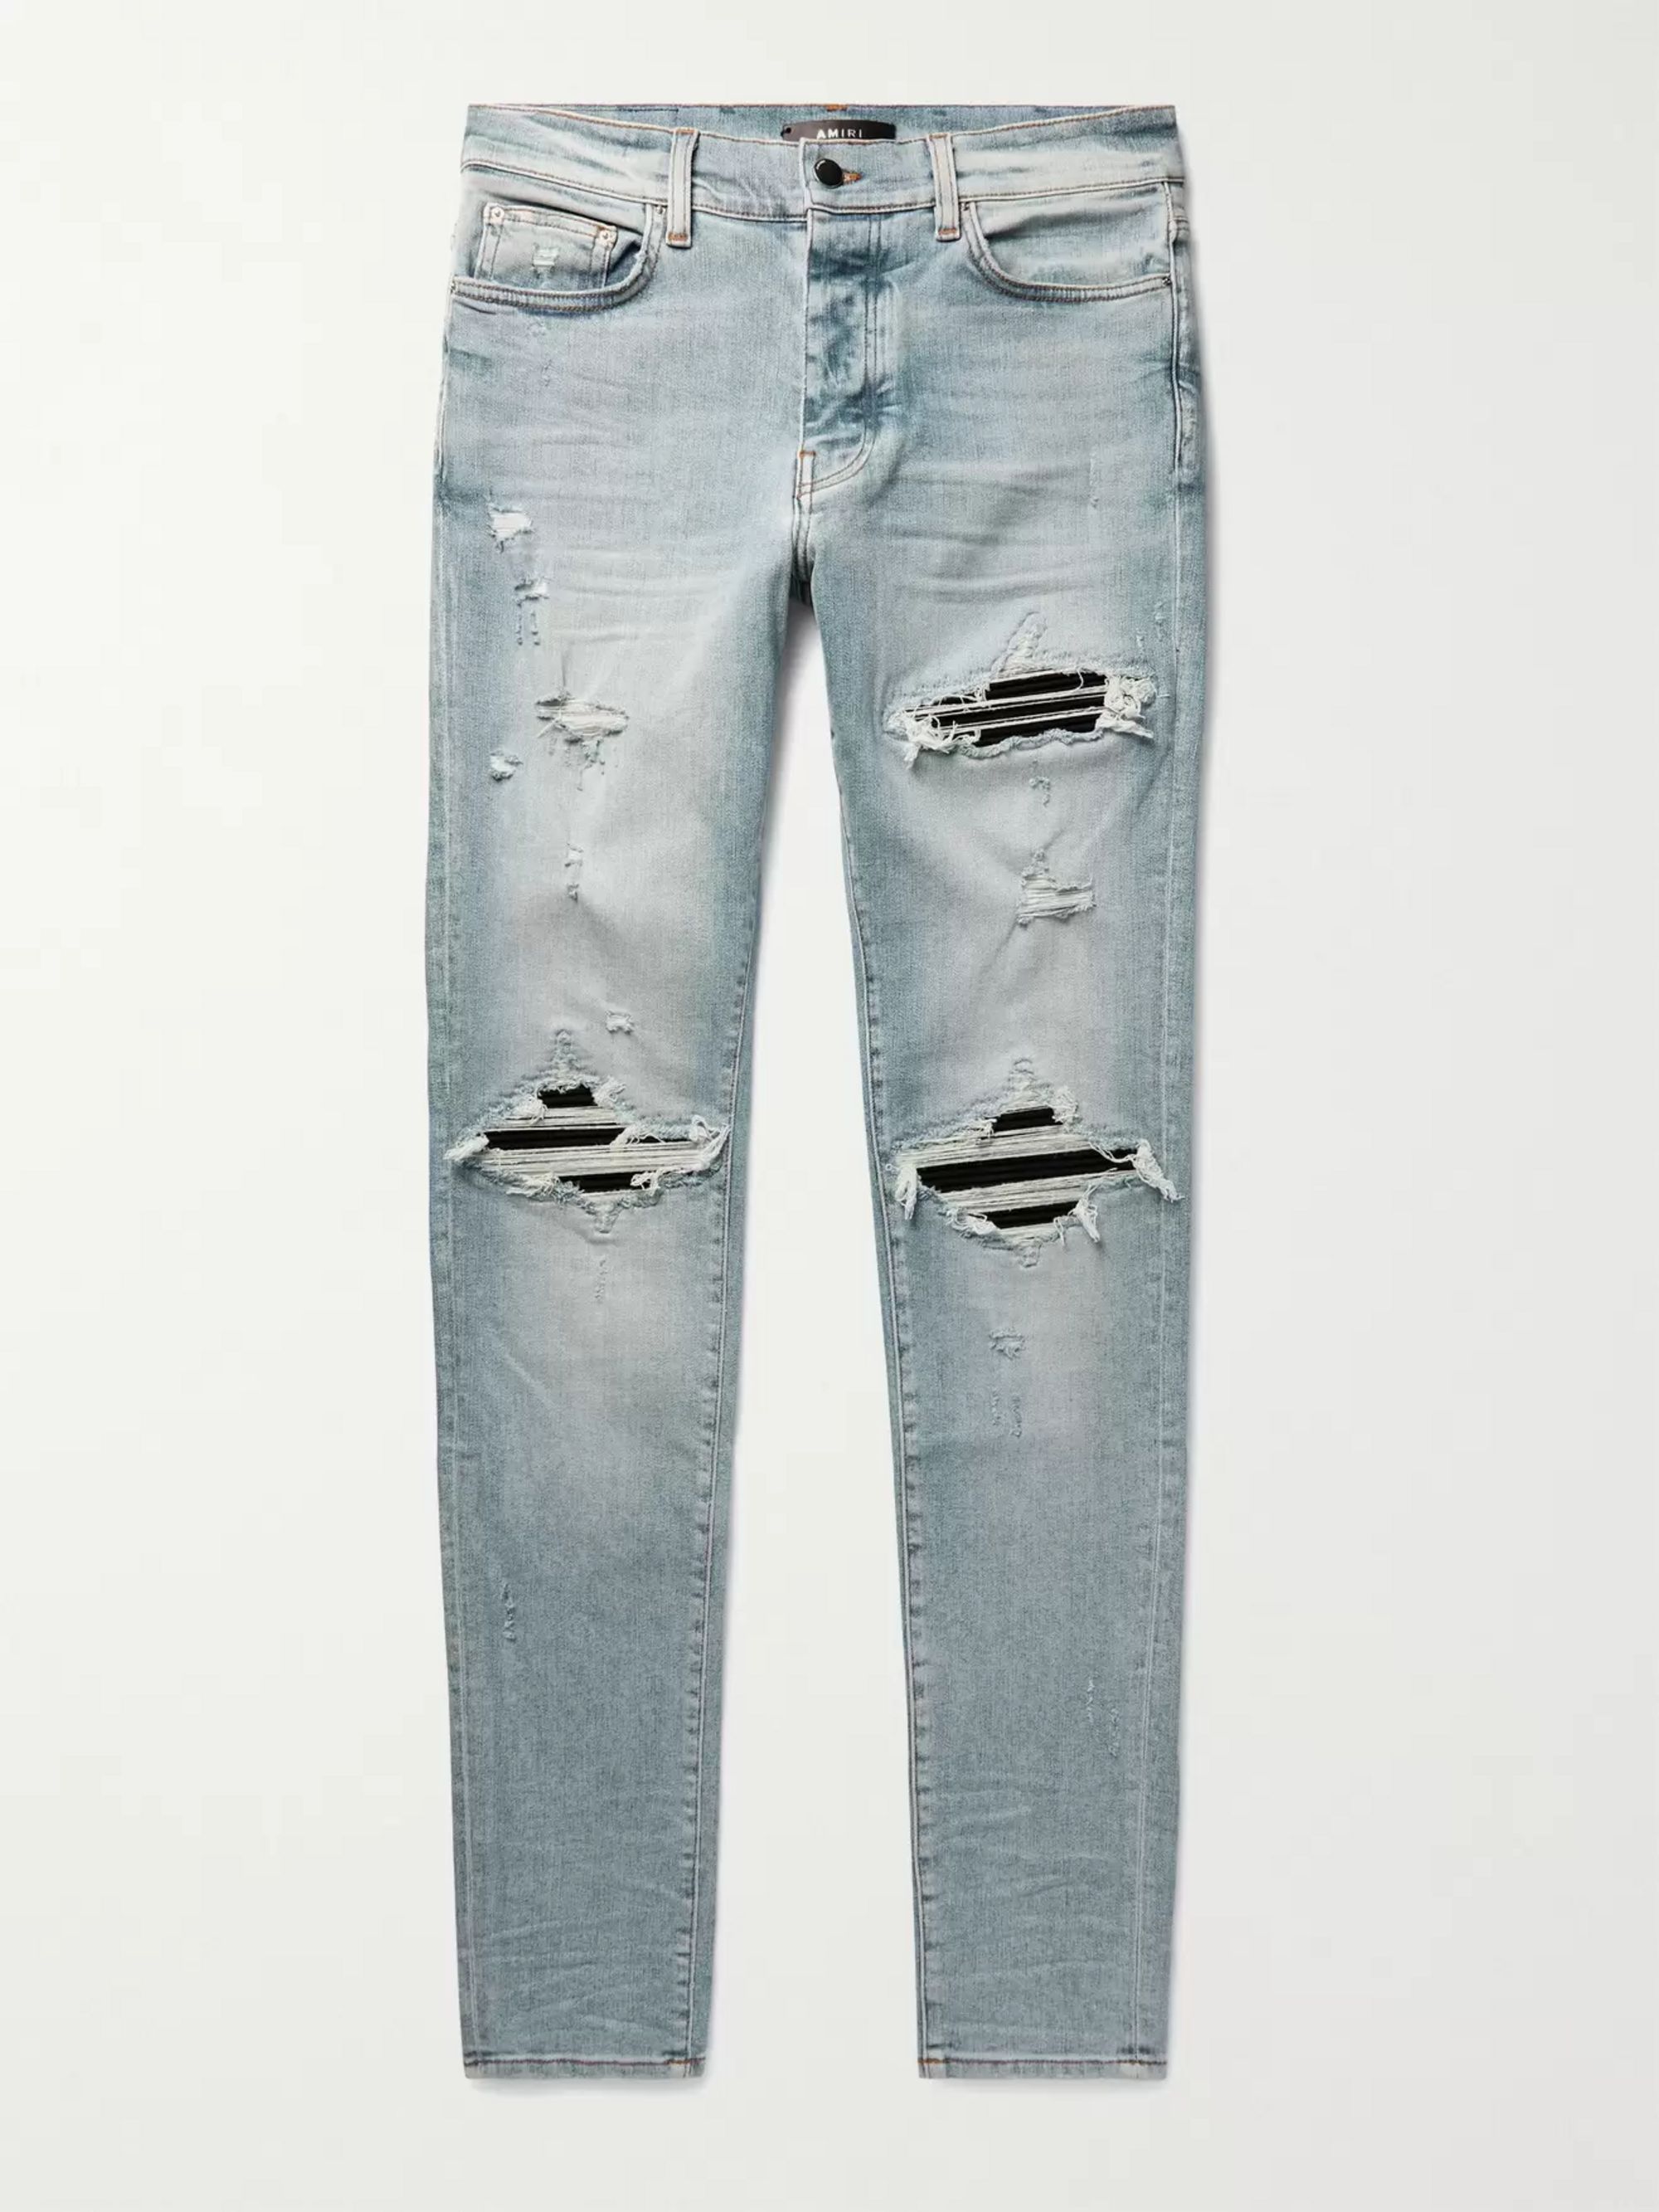 mike amiri's jeans